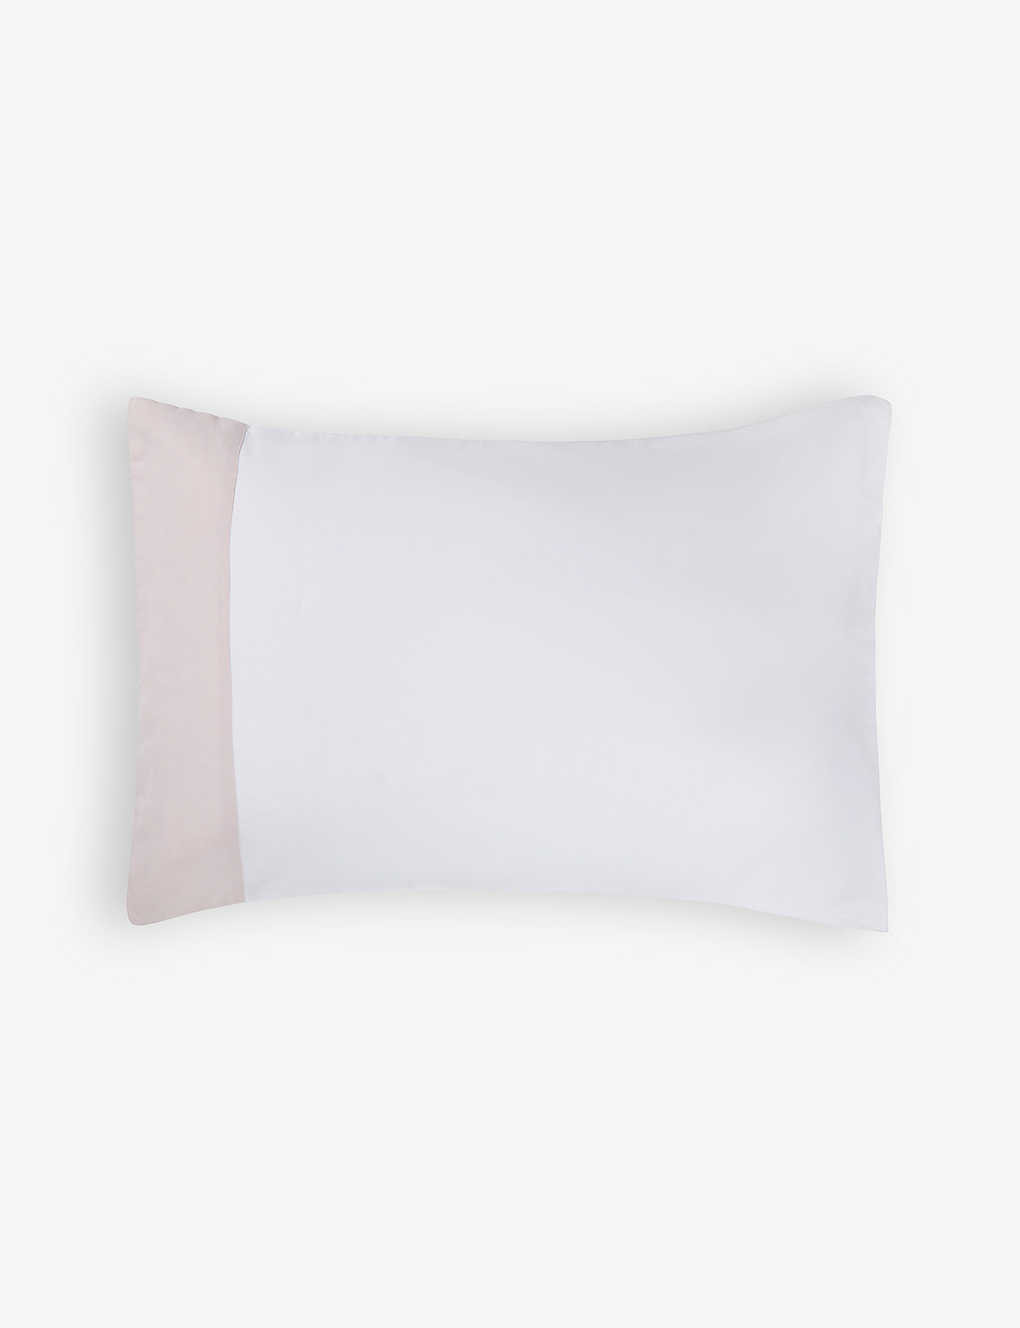 The White Company Petalstrpe Portobello Contrast-border Cotton Pillowcase 50cm X 75cm